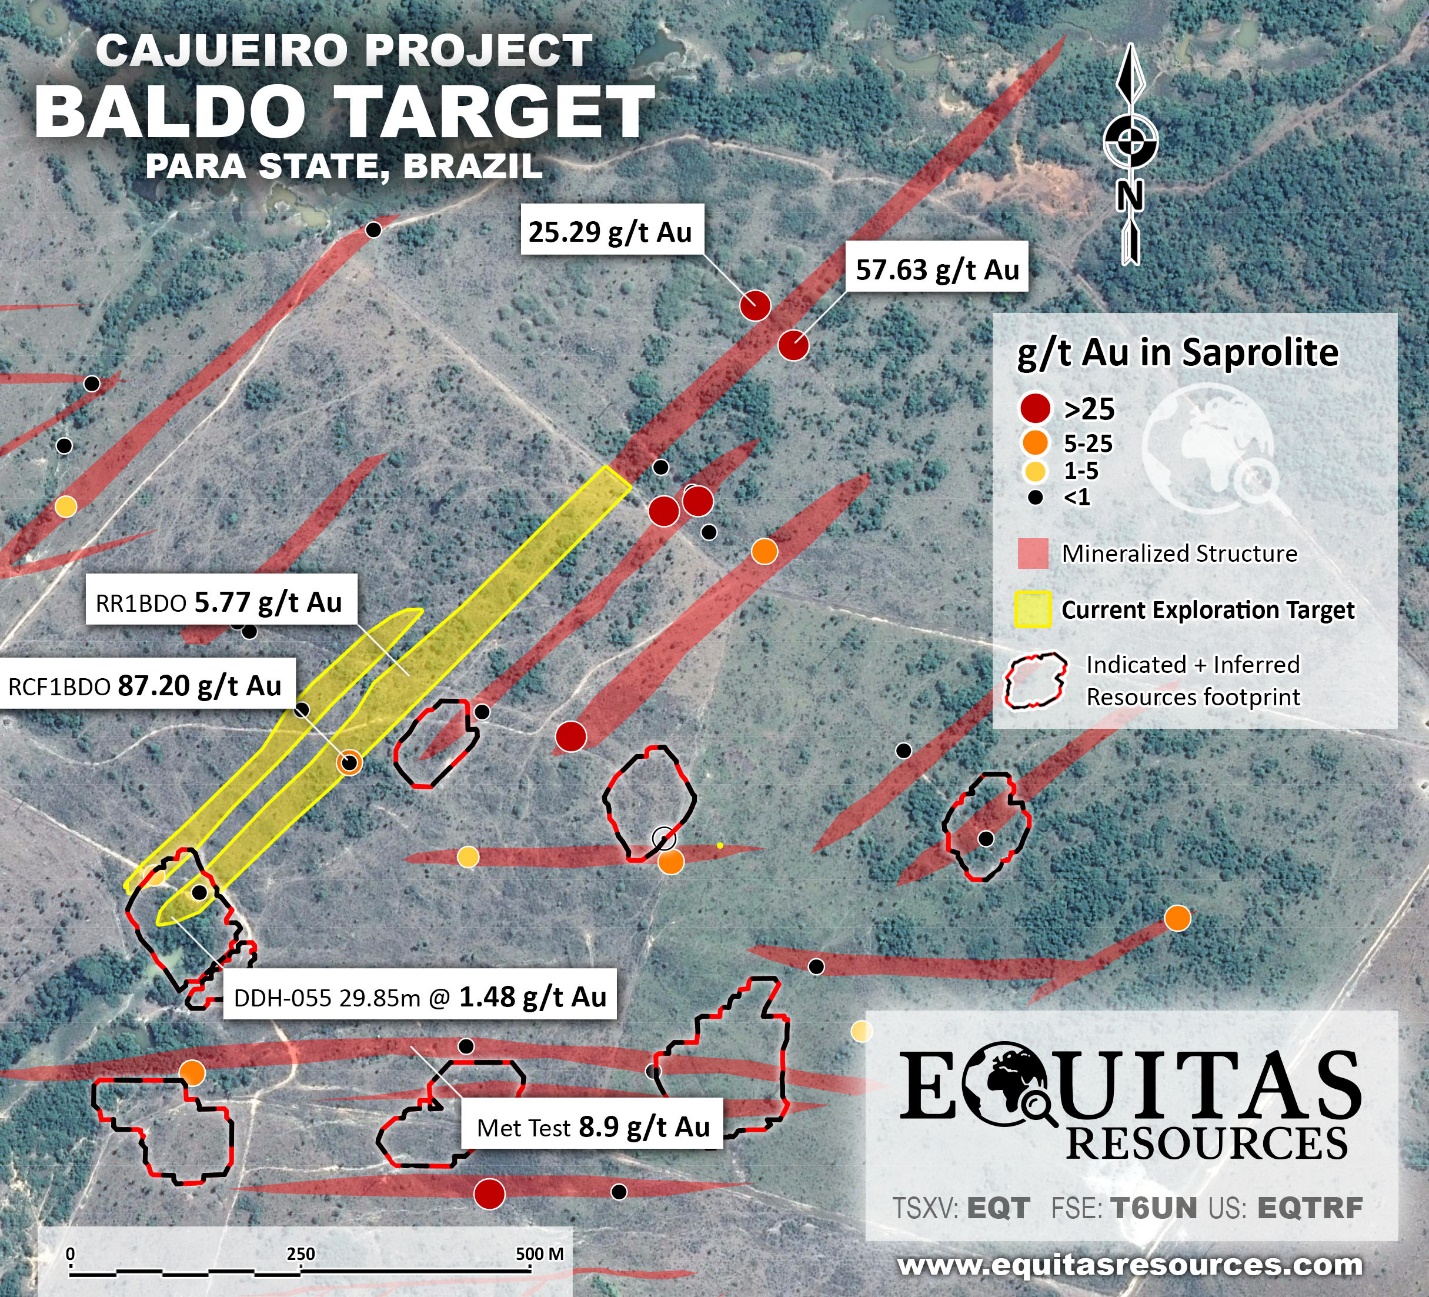 Equitas Resources EQT Cajuiero 2